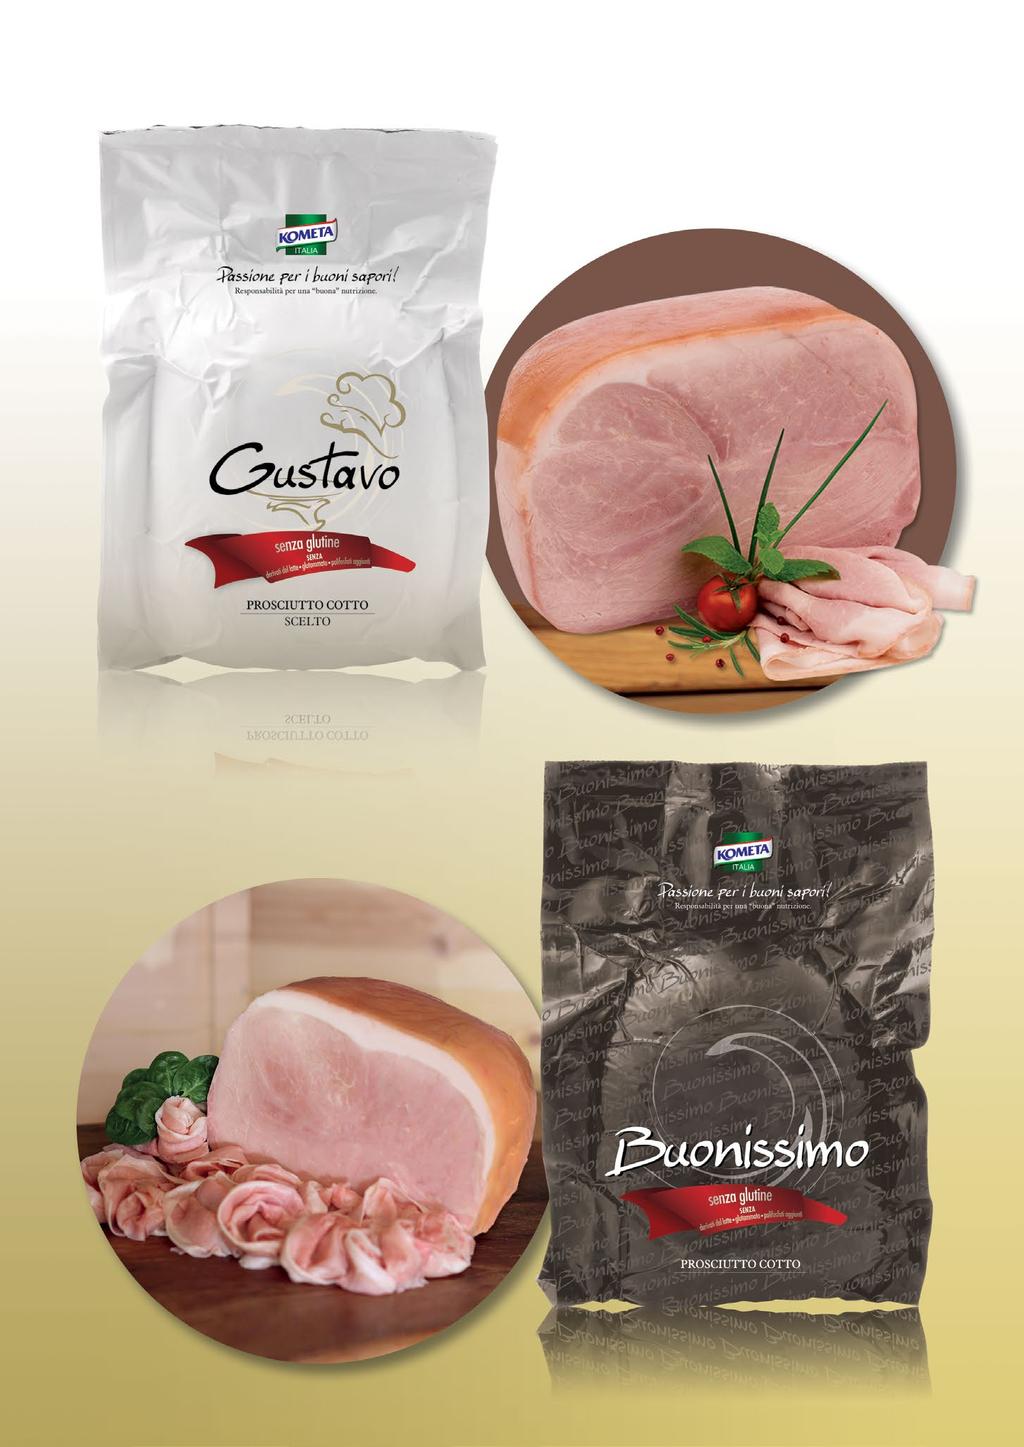 HAMS / PROSCIUTTI COTTI DA COSCIA INTERA GUSTAVO cooked pork ham selected quality / Prosciutto cotto